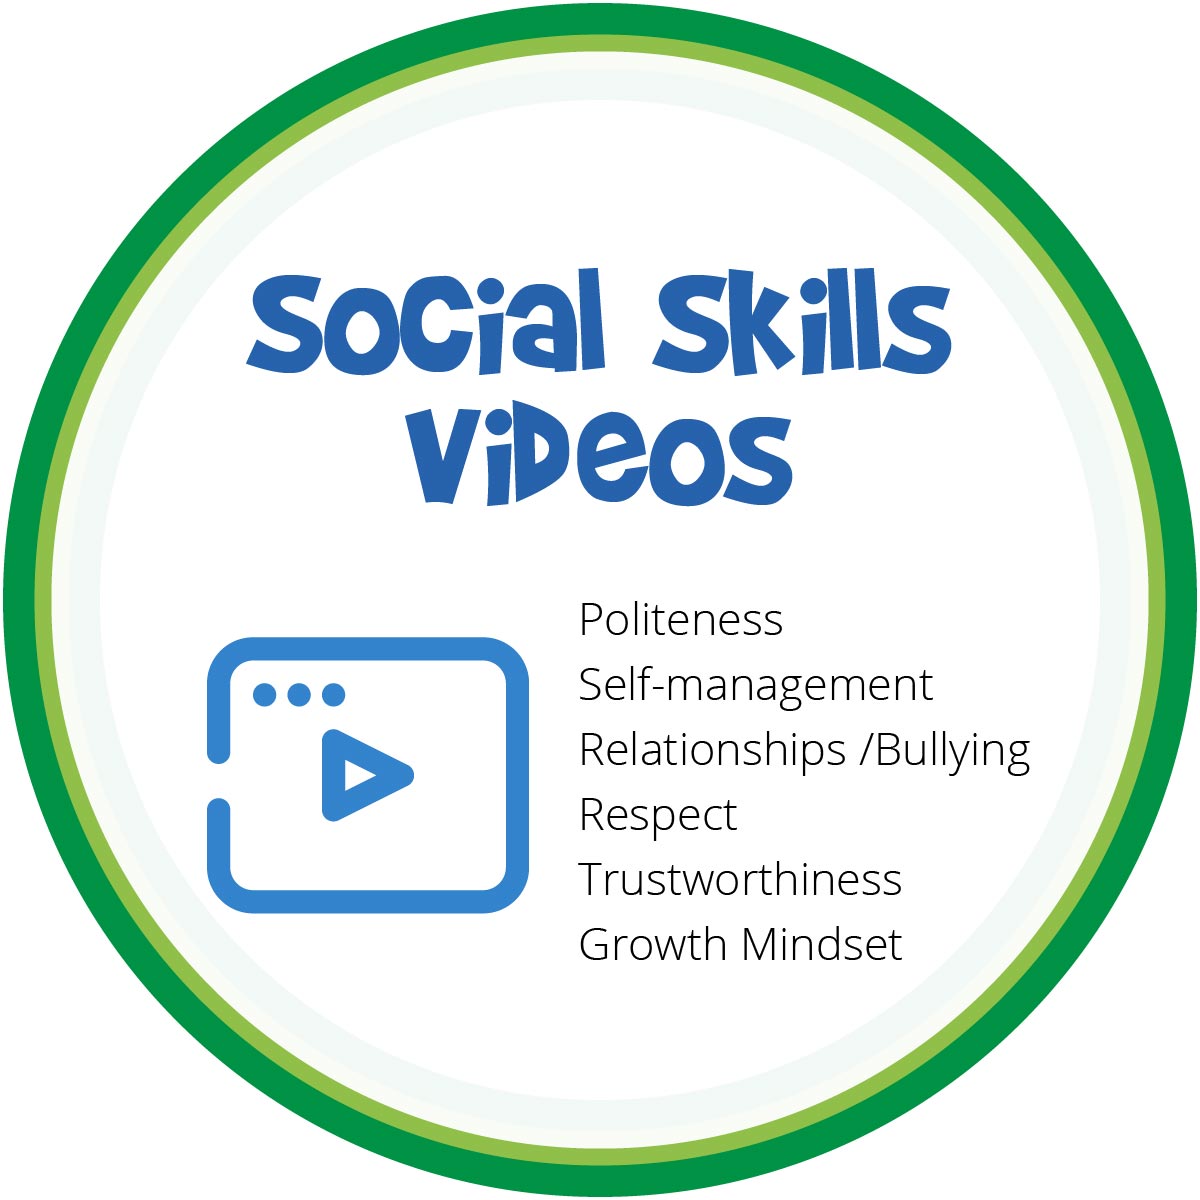 Social Skills videos for elementary Grades K-4